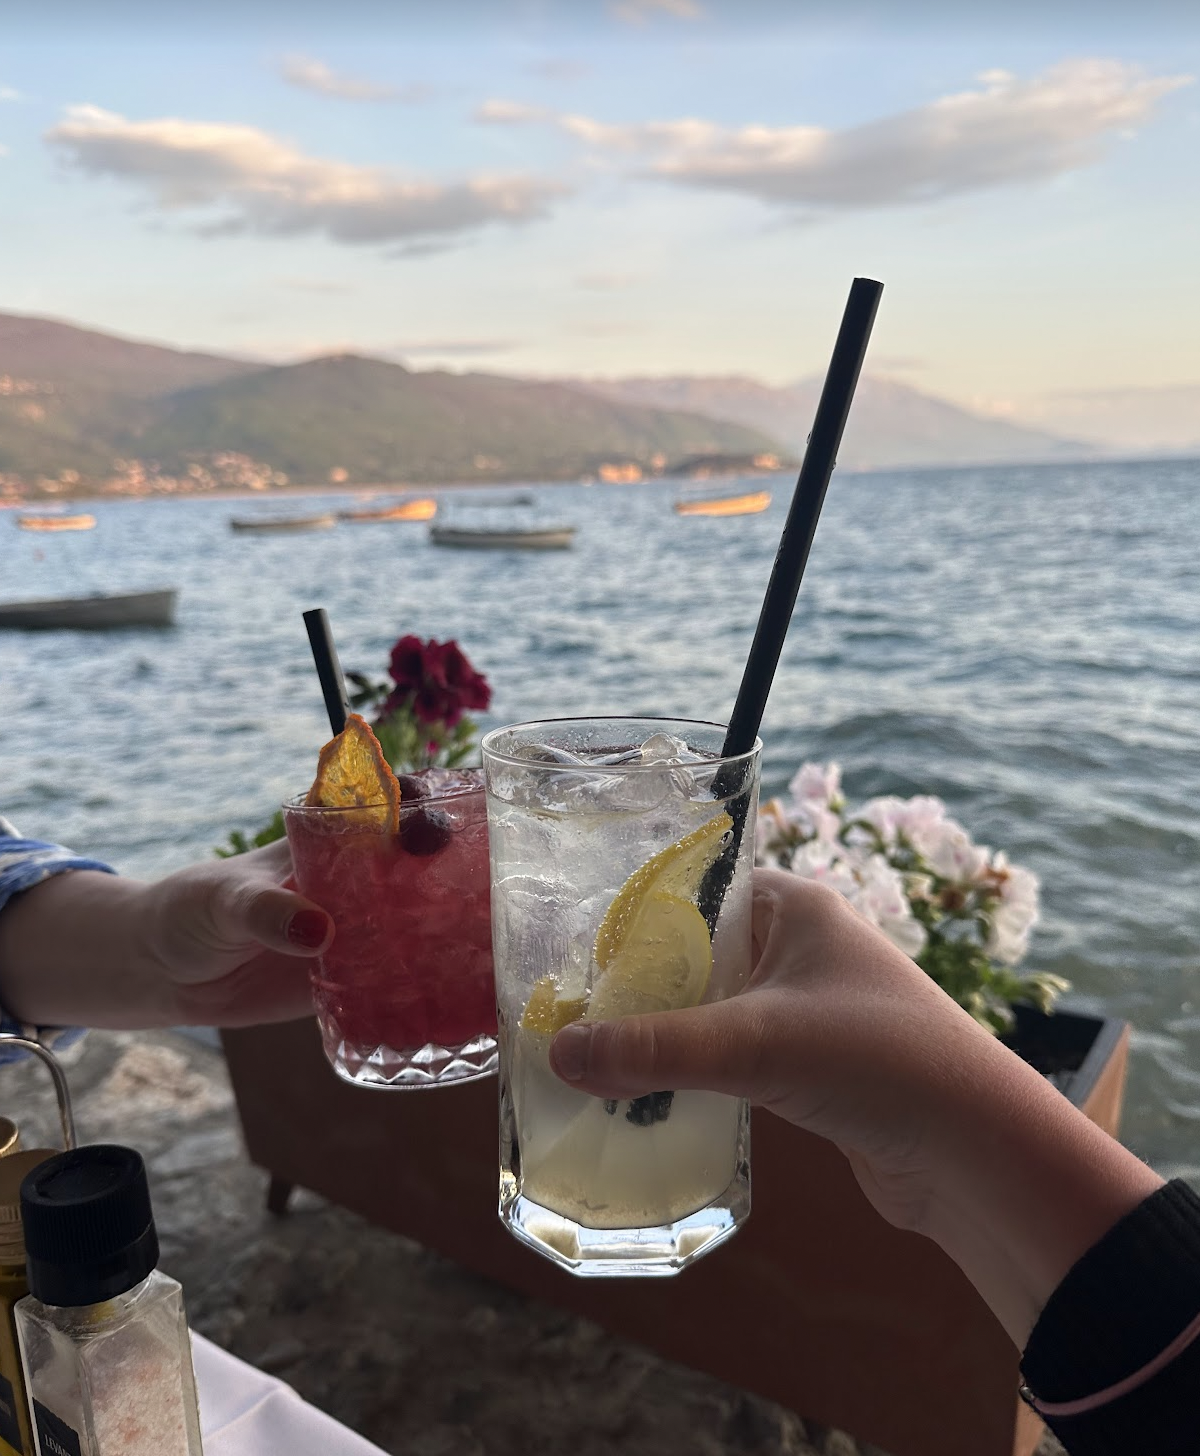 Visiting Lake Ohrid